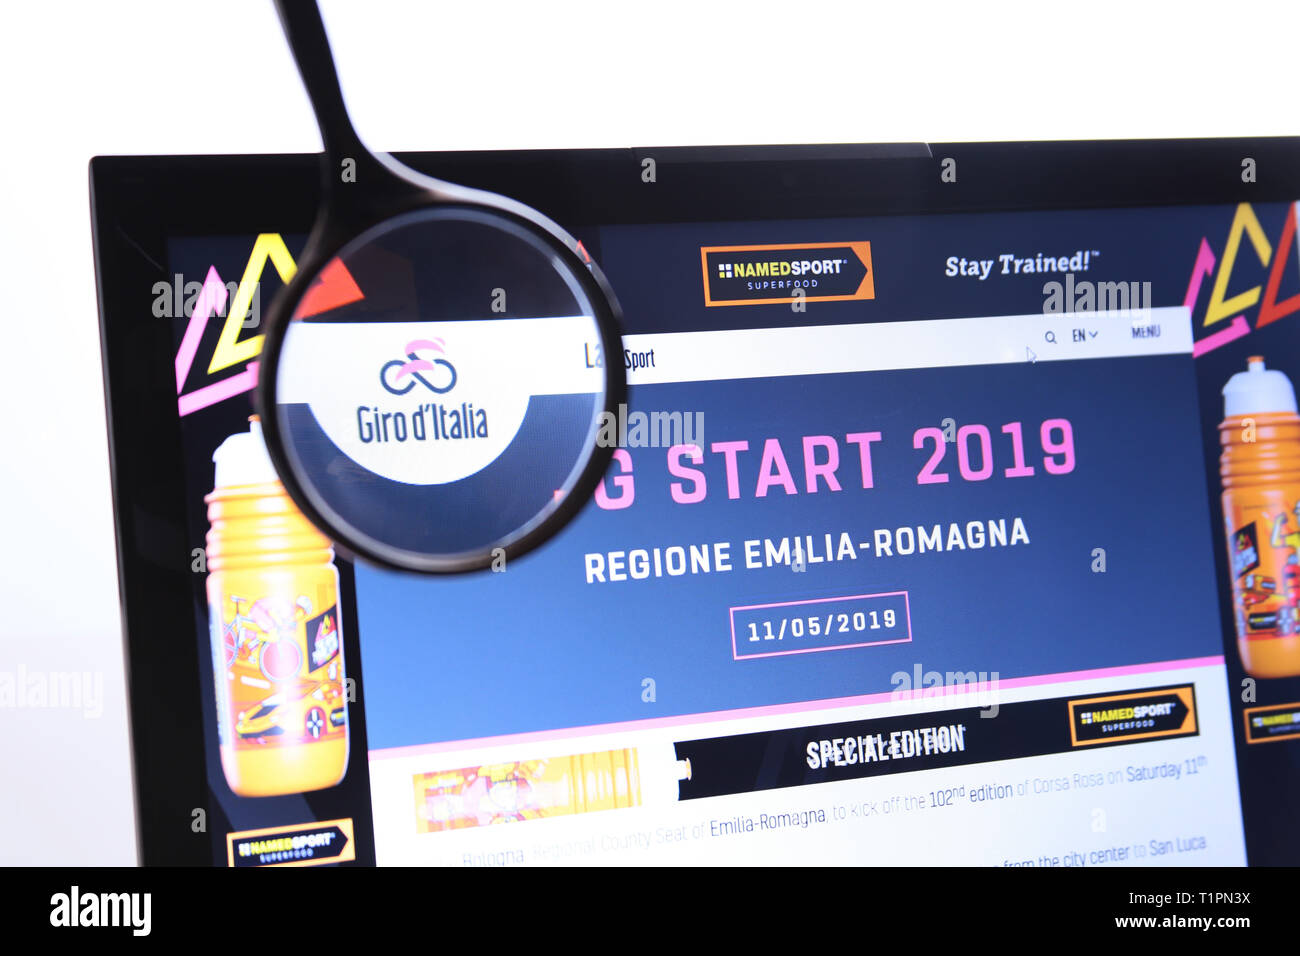 Bologna, Italien - 26. März 2019: Illustrative redaktionelle Website des Giro d'Italia Logo sichtbar auf dem Anzeigebildschirm angezeigt. Stockfoto